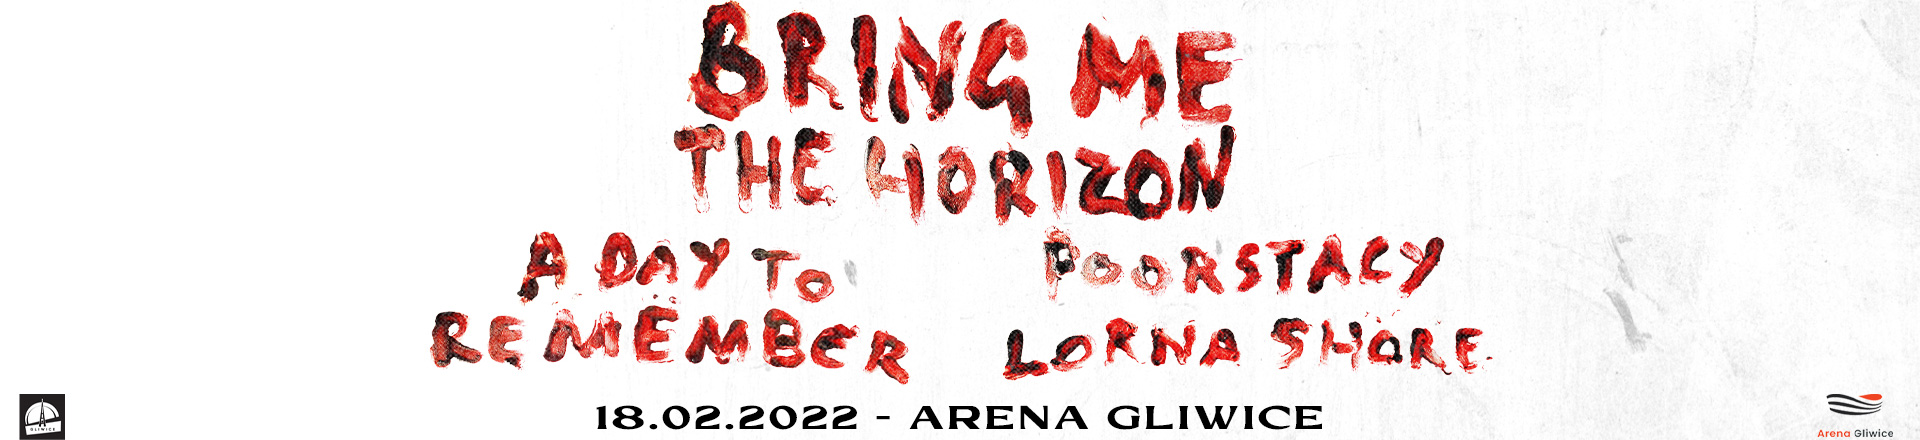 Bring Me The Horizon wystąpią w Polsce w przyszłym miesiącu